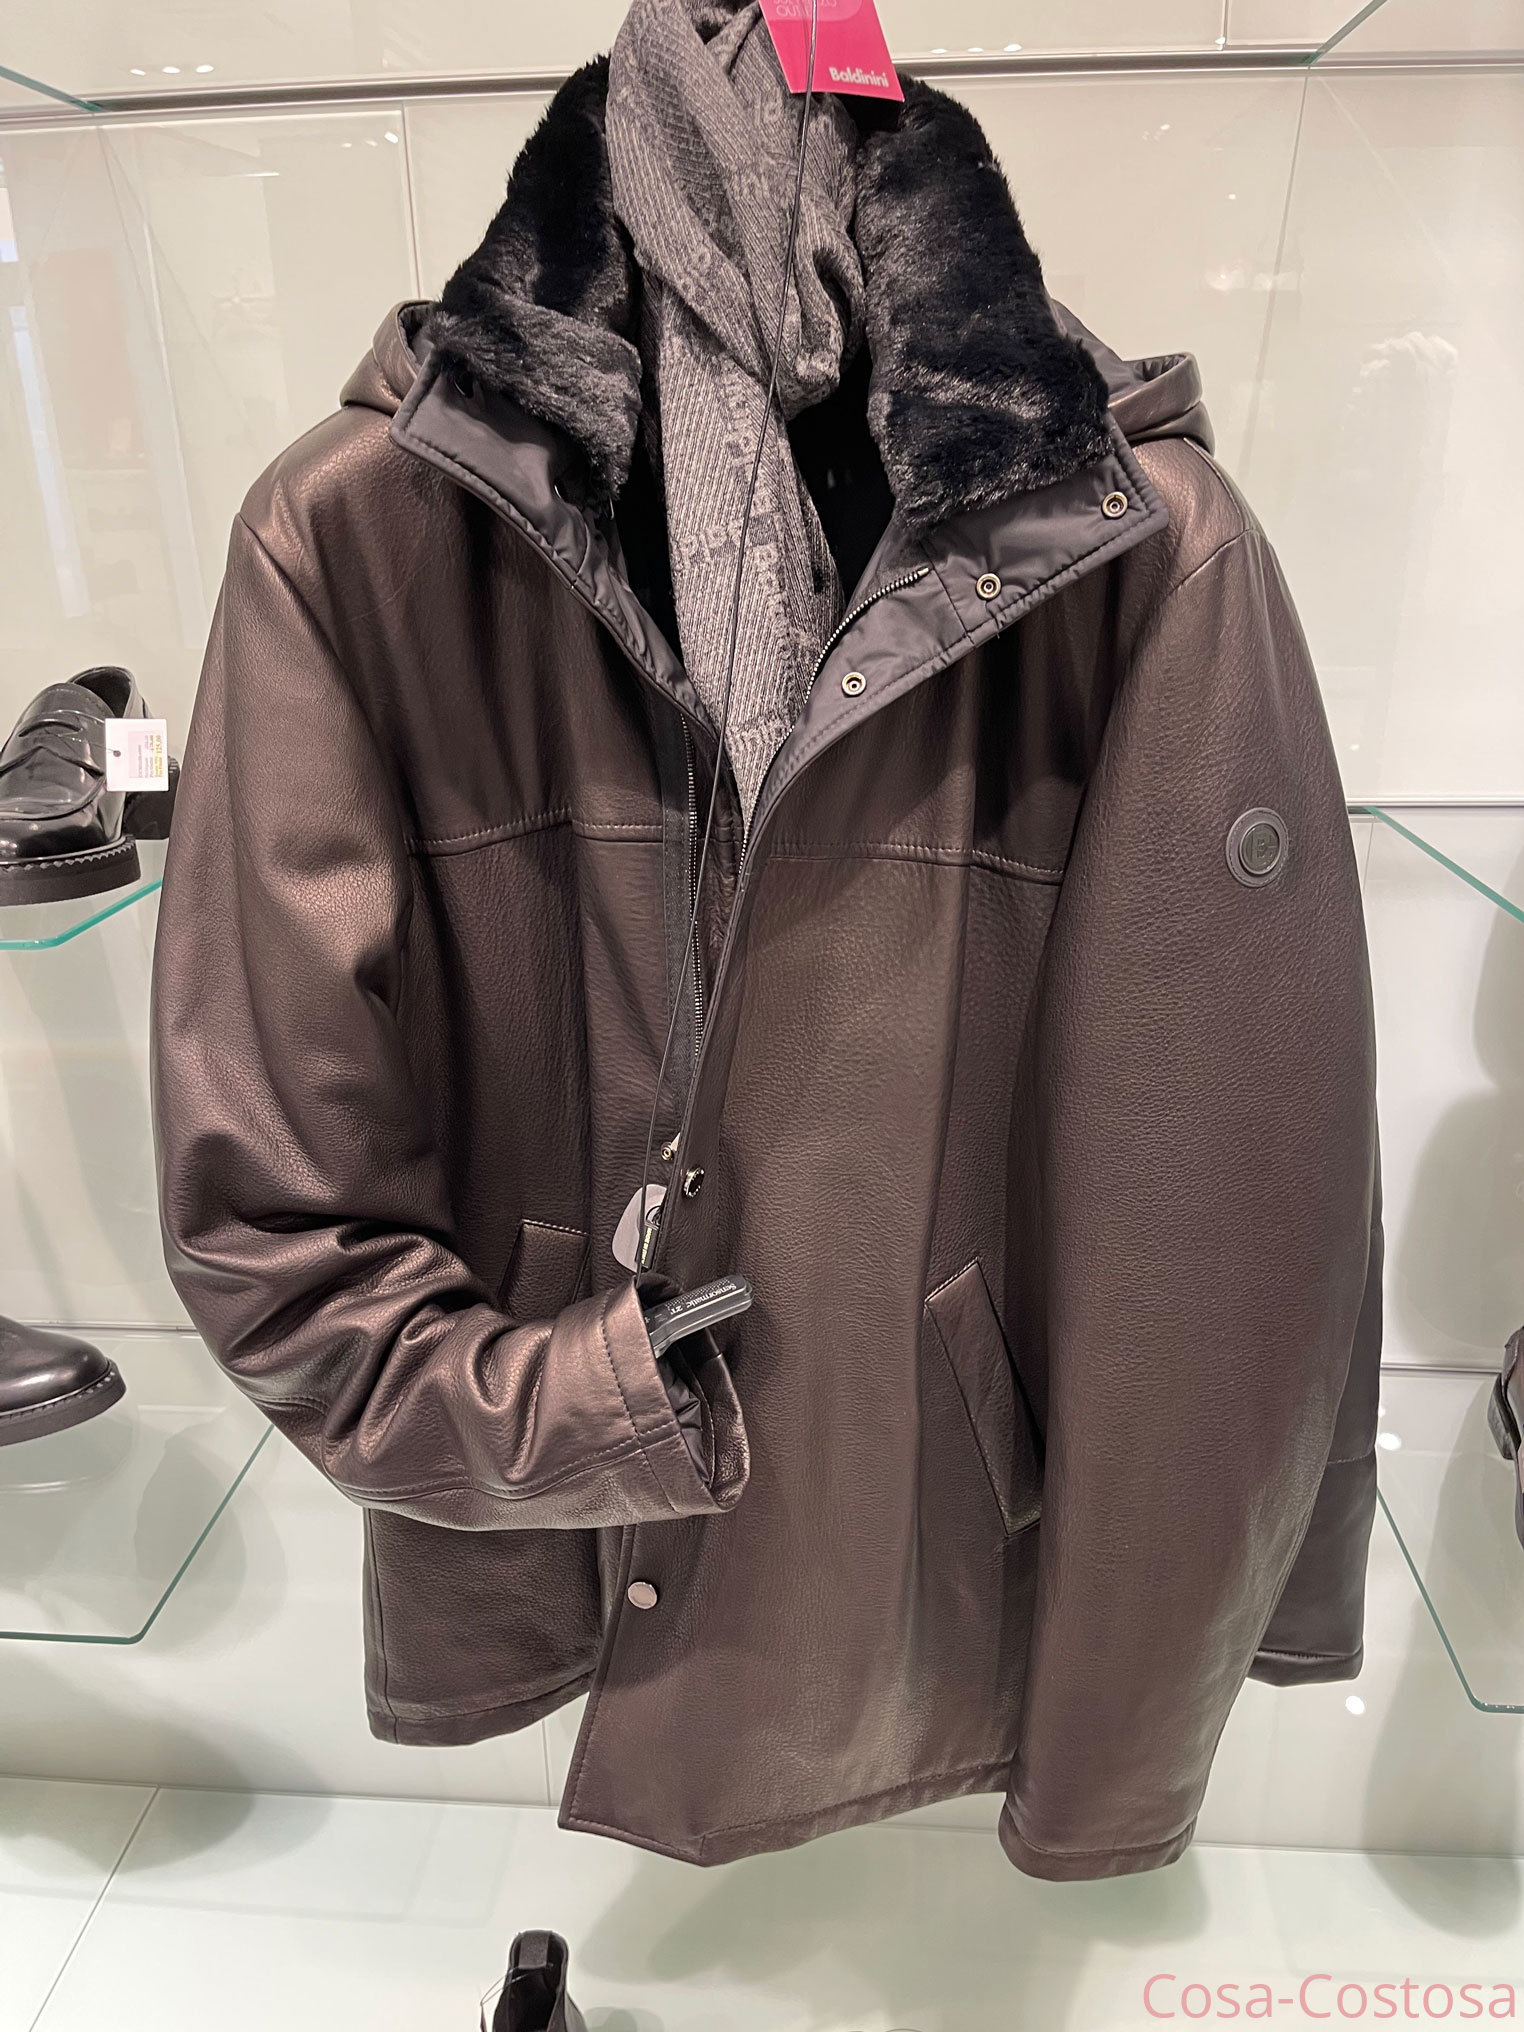 Итальянские бренды Куртка Балдинини коричневая